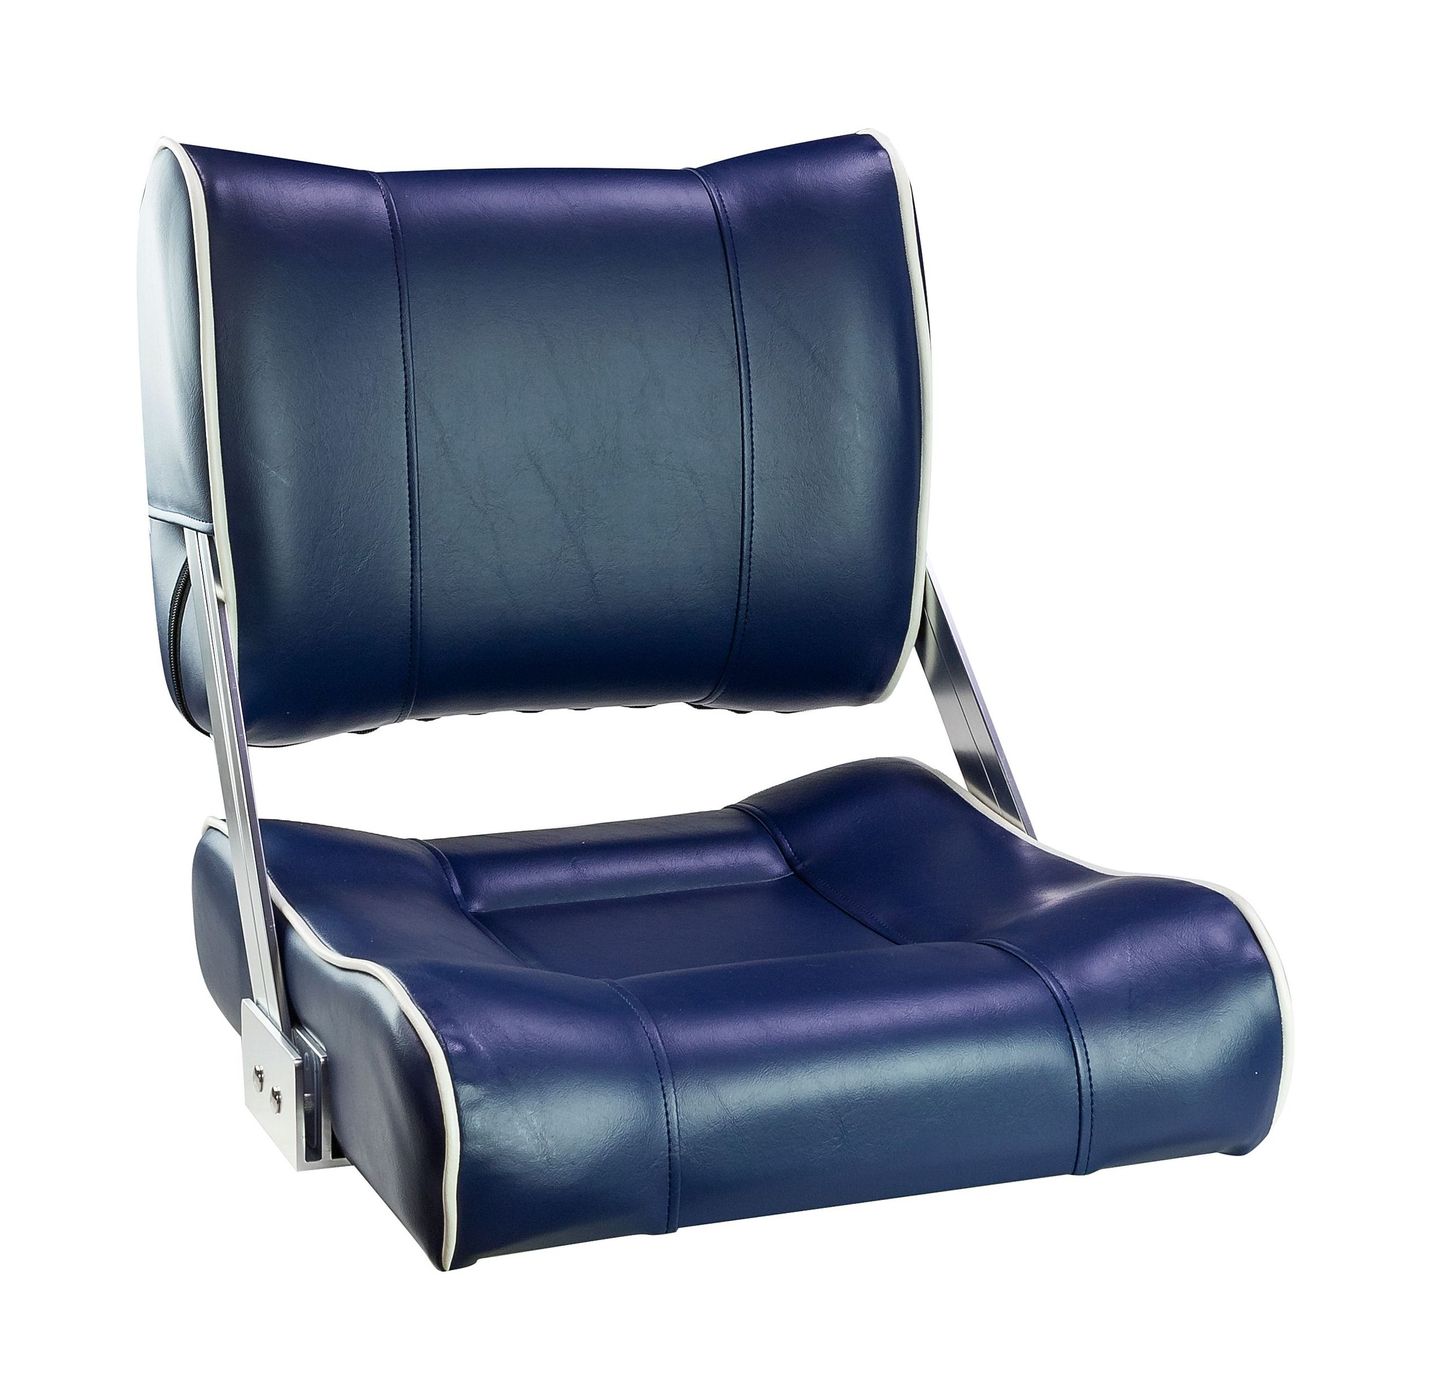 Кресло с перекидной спинкой, обивка синий винил с белым кантом 16106B-MR сиденье мягкое pro casting обивка синий винил 75104b